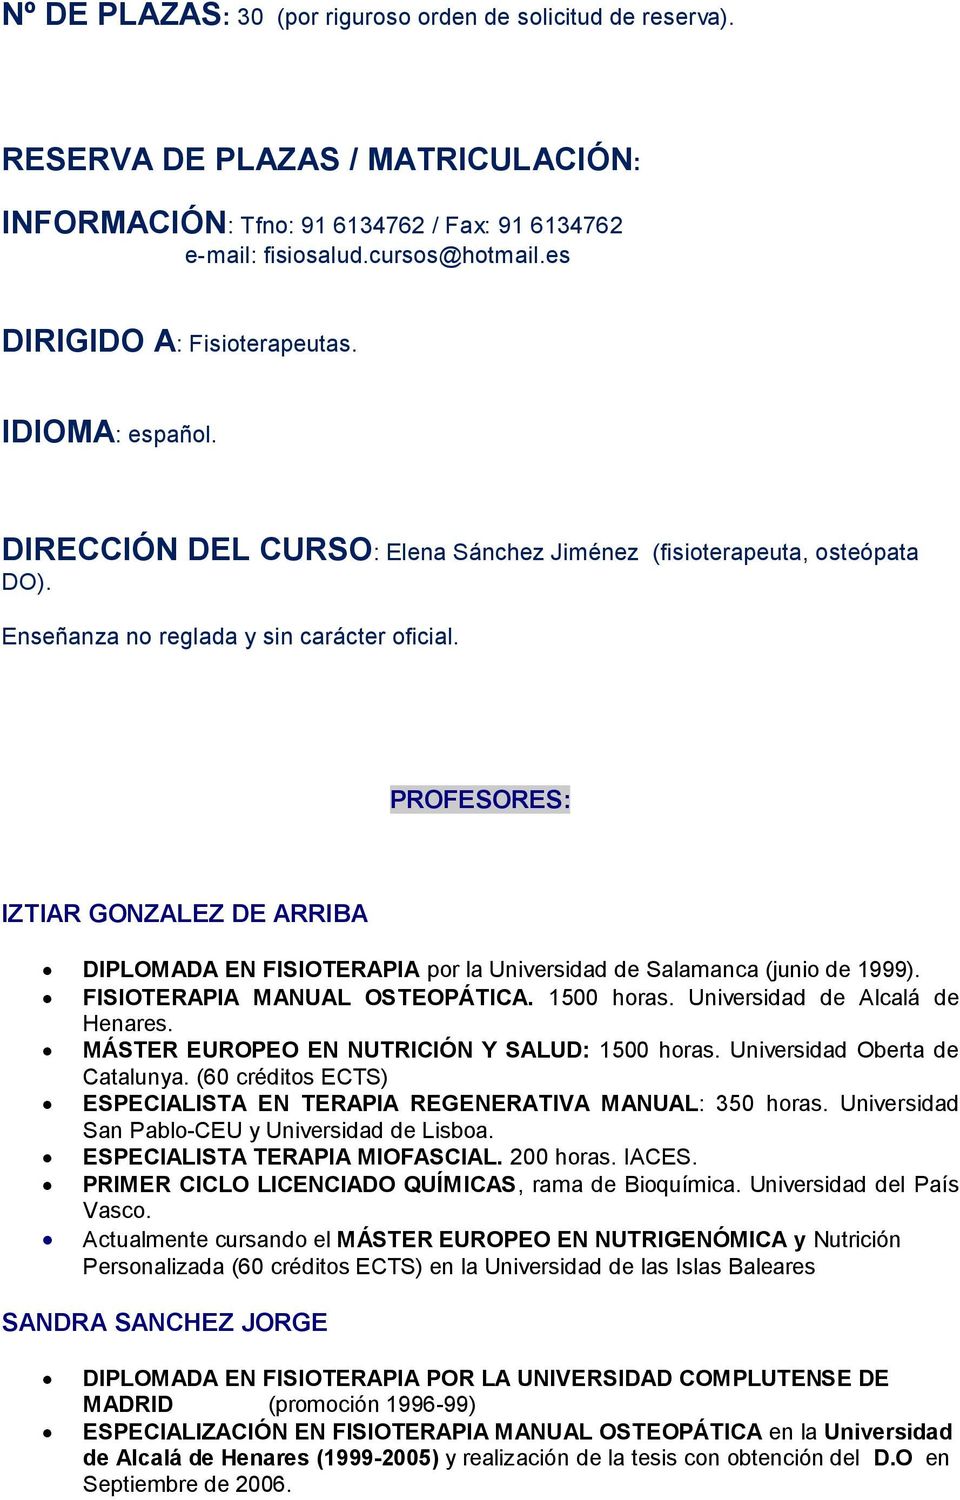 PROFESORES: IZTIAR GONZALEZ DE ARRIBA DIPLOMADA EN FISIOTERAPIA por la Universidad de Salamanca (junio de 1999). FISIOTERAPIA MANUAL OSTEOPÁTICA. 1500 horas. Universidad de Alcalá de Henares.